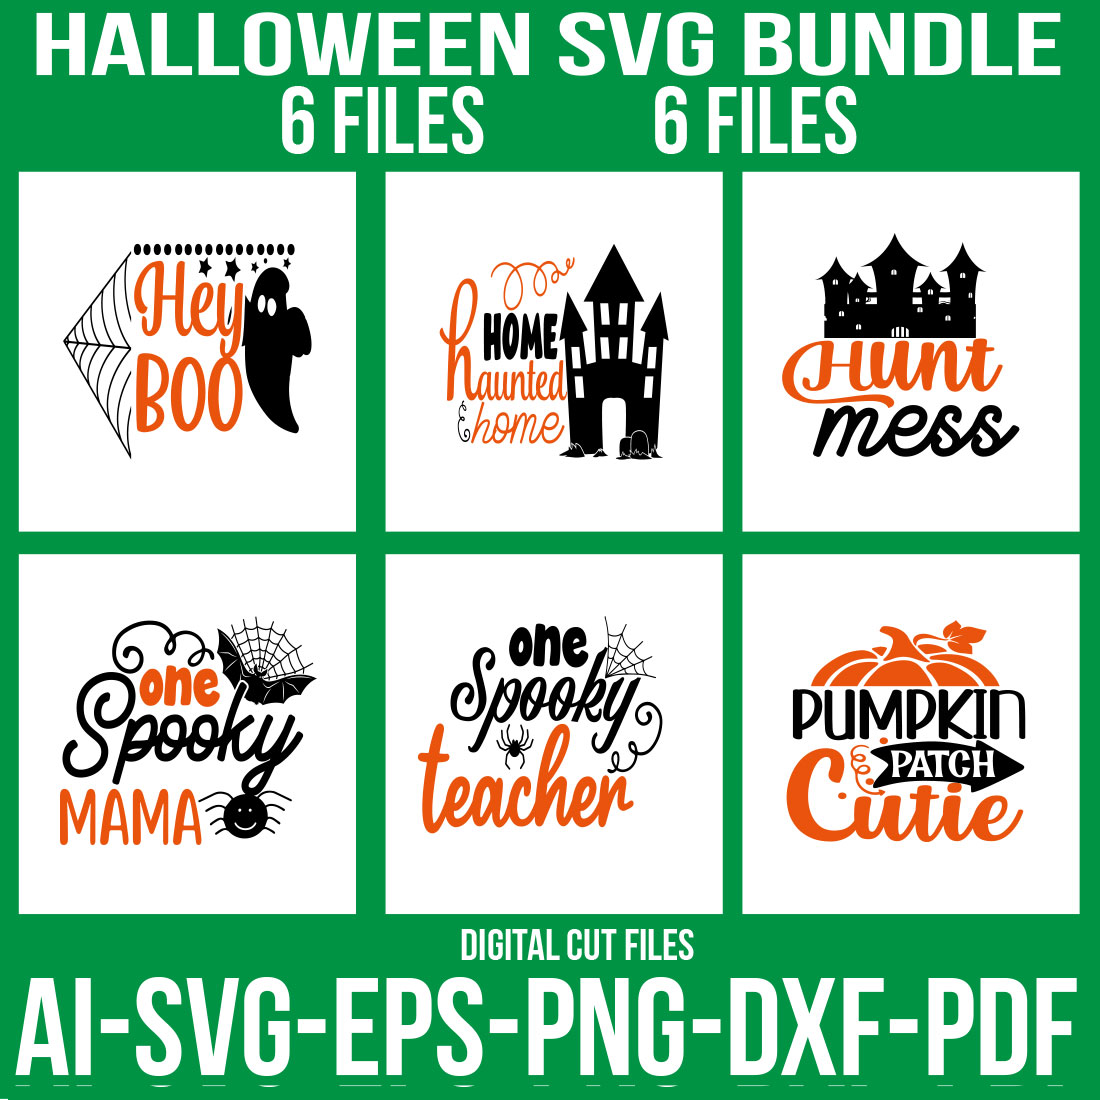 Halloween Doormat SVG Bundle cover image.